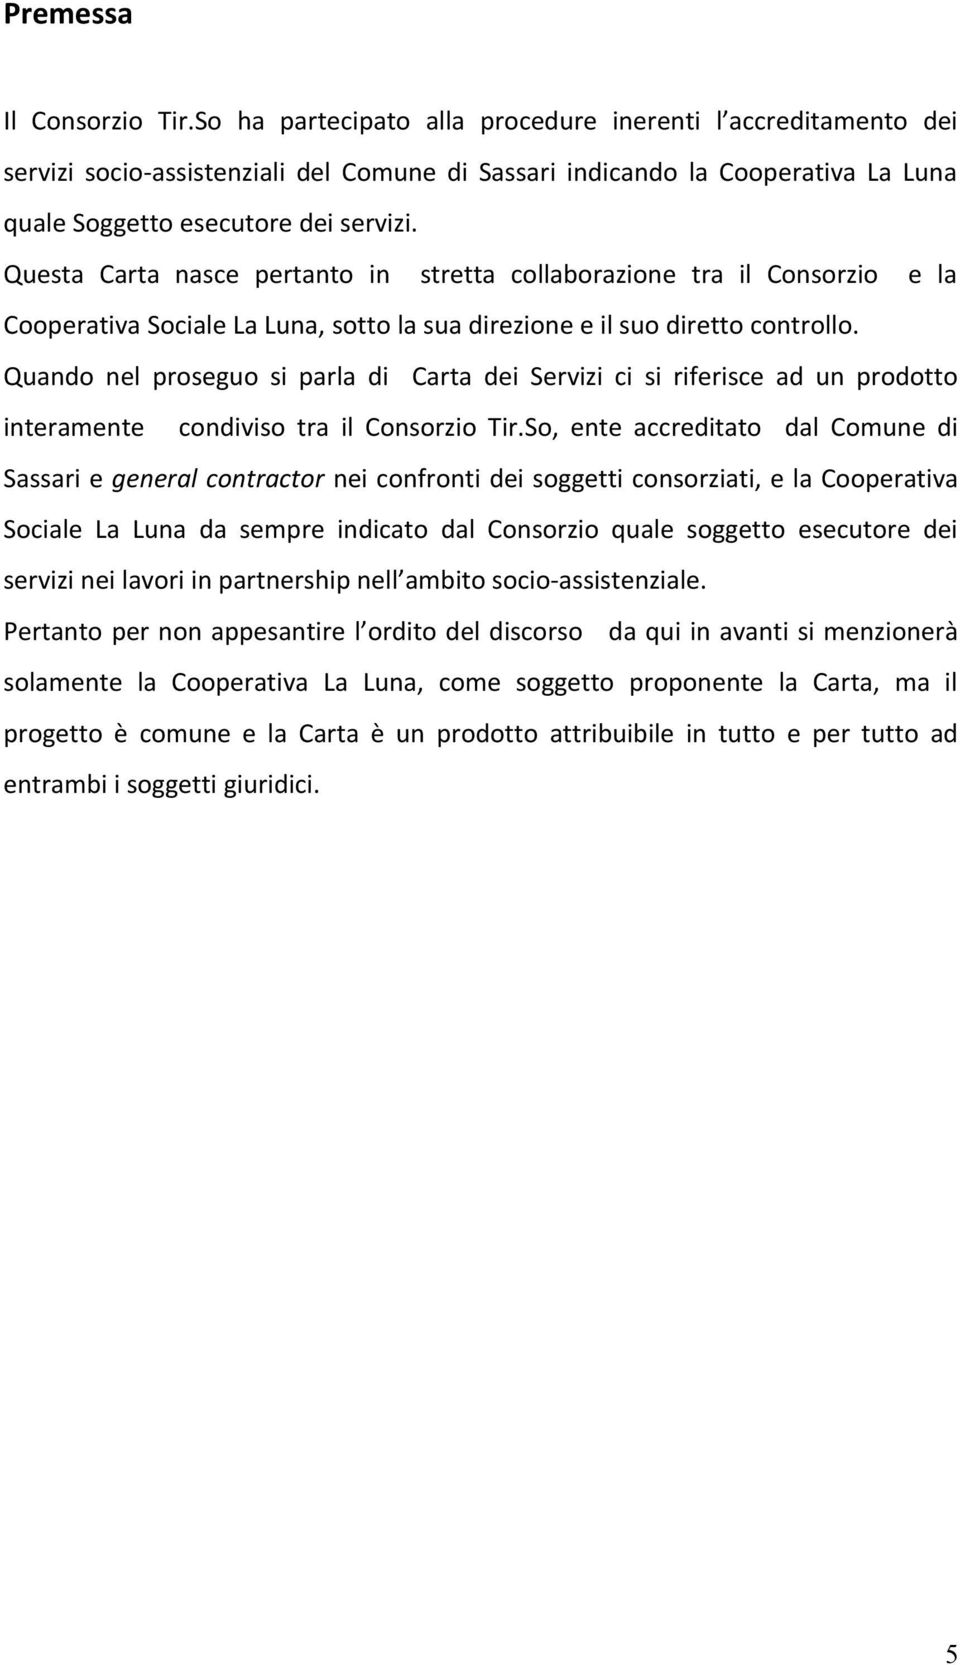 Questa Carta nasce pertanto in stretta collaborazione tra il Consorzio e la Cooperativa Sociale La Luna, sotto la sua direzione e il suo diretto controllo.